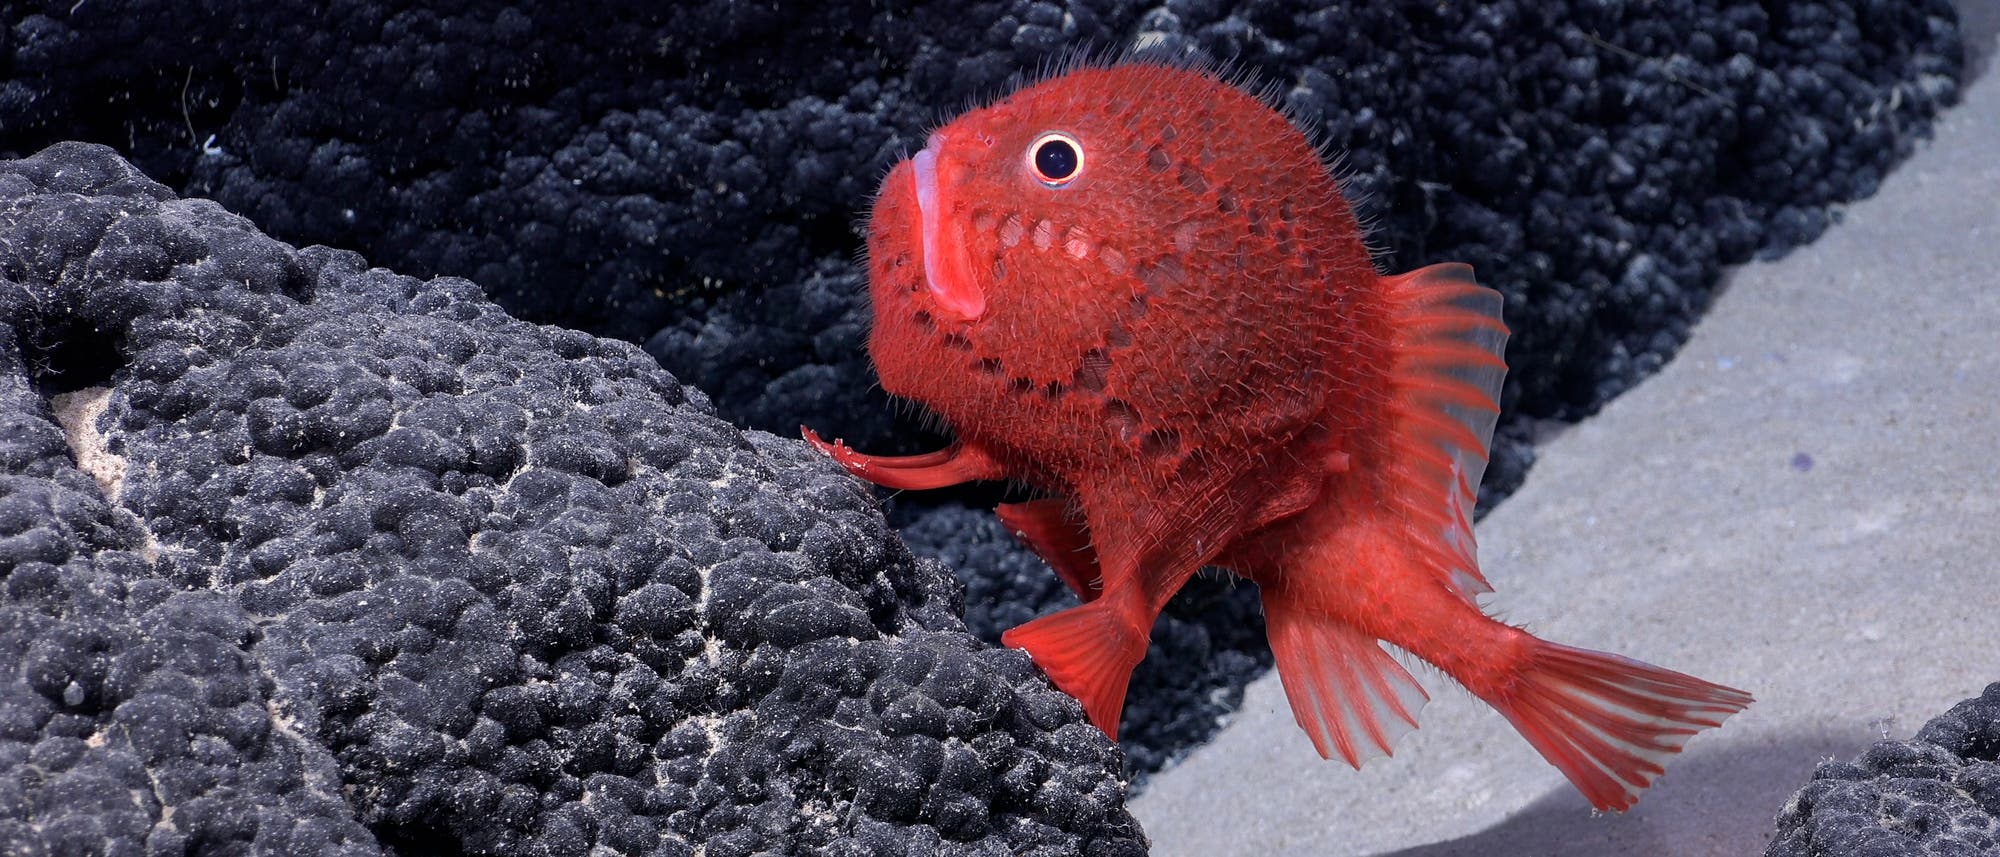 Ein knallroter Fisch mit einem schwarzen Auge und weißem Augenring "sitzt" auf einem schwarzen Stein vor dunklem Hintergrund.